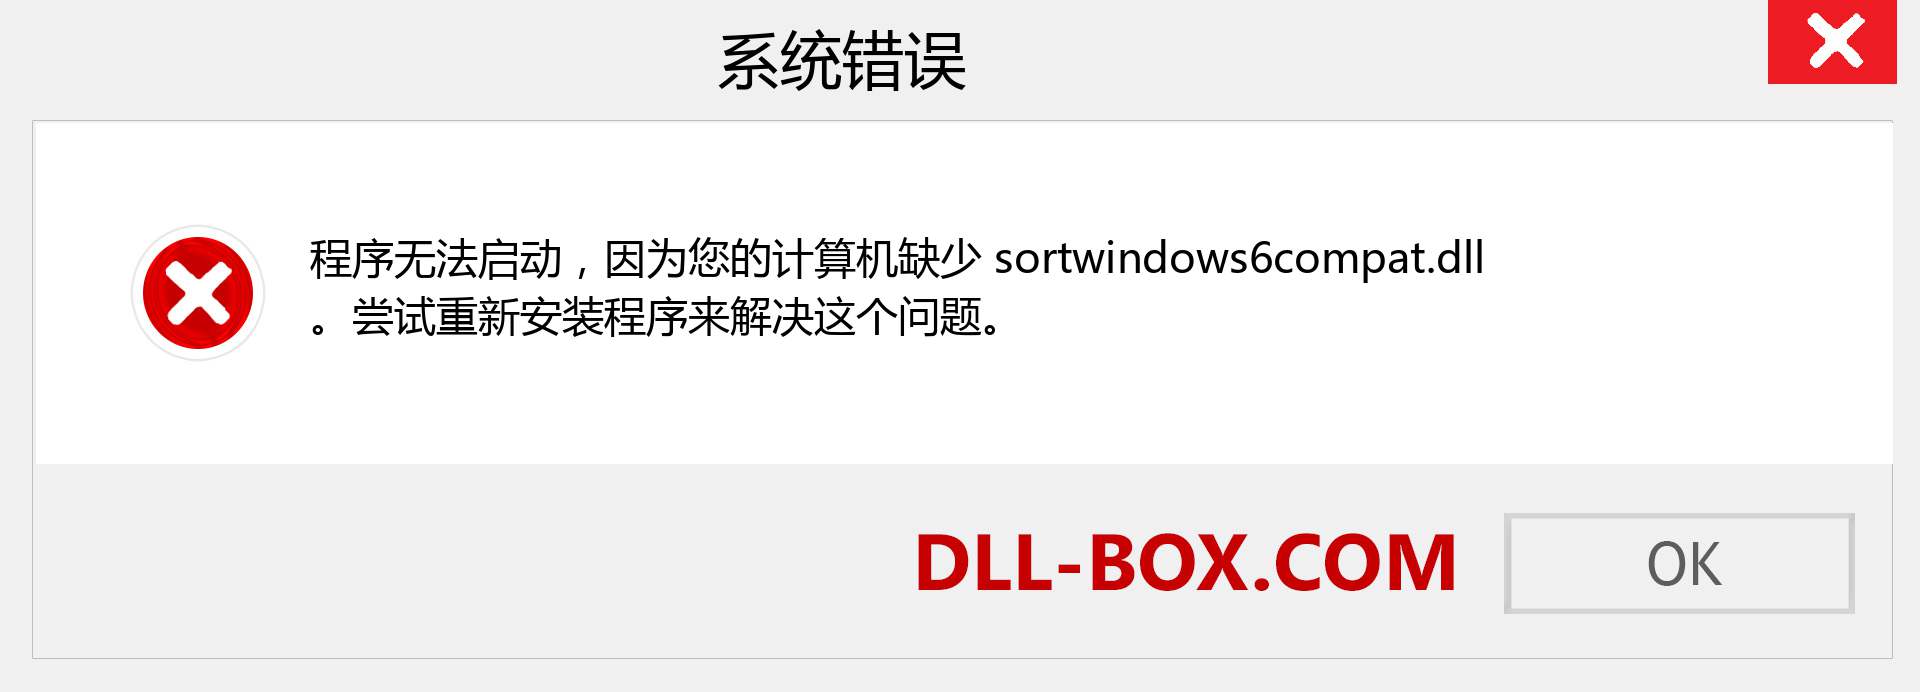 sortwindows6compat.dll 文件丢失？。 适用于 Windows 7、8、10 的下载 - 修复 Windows、照片、图像上的 sortwindows6compat dll 丢失错误